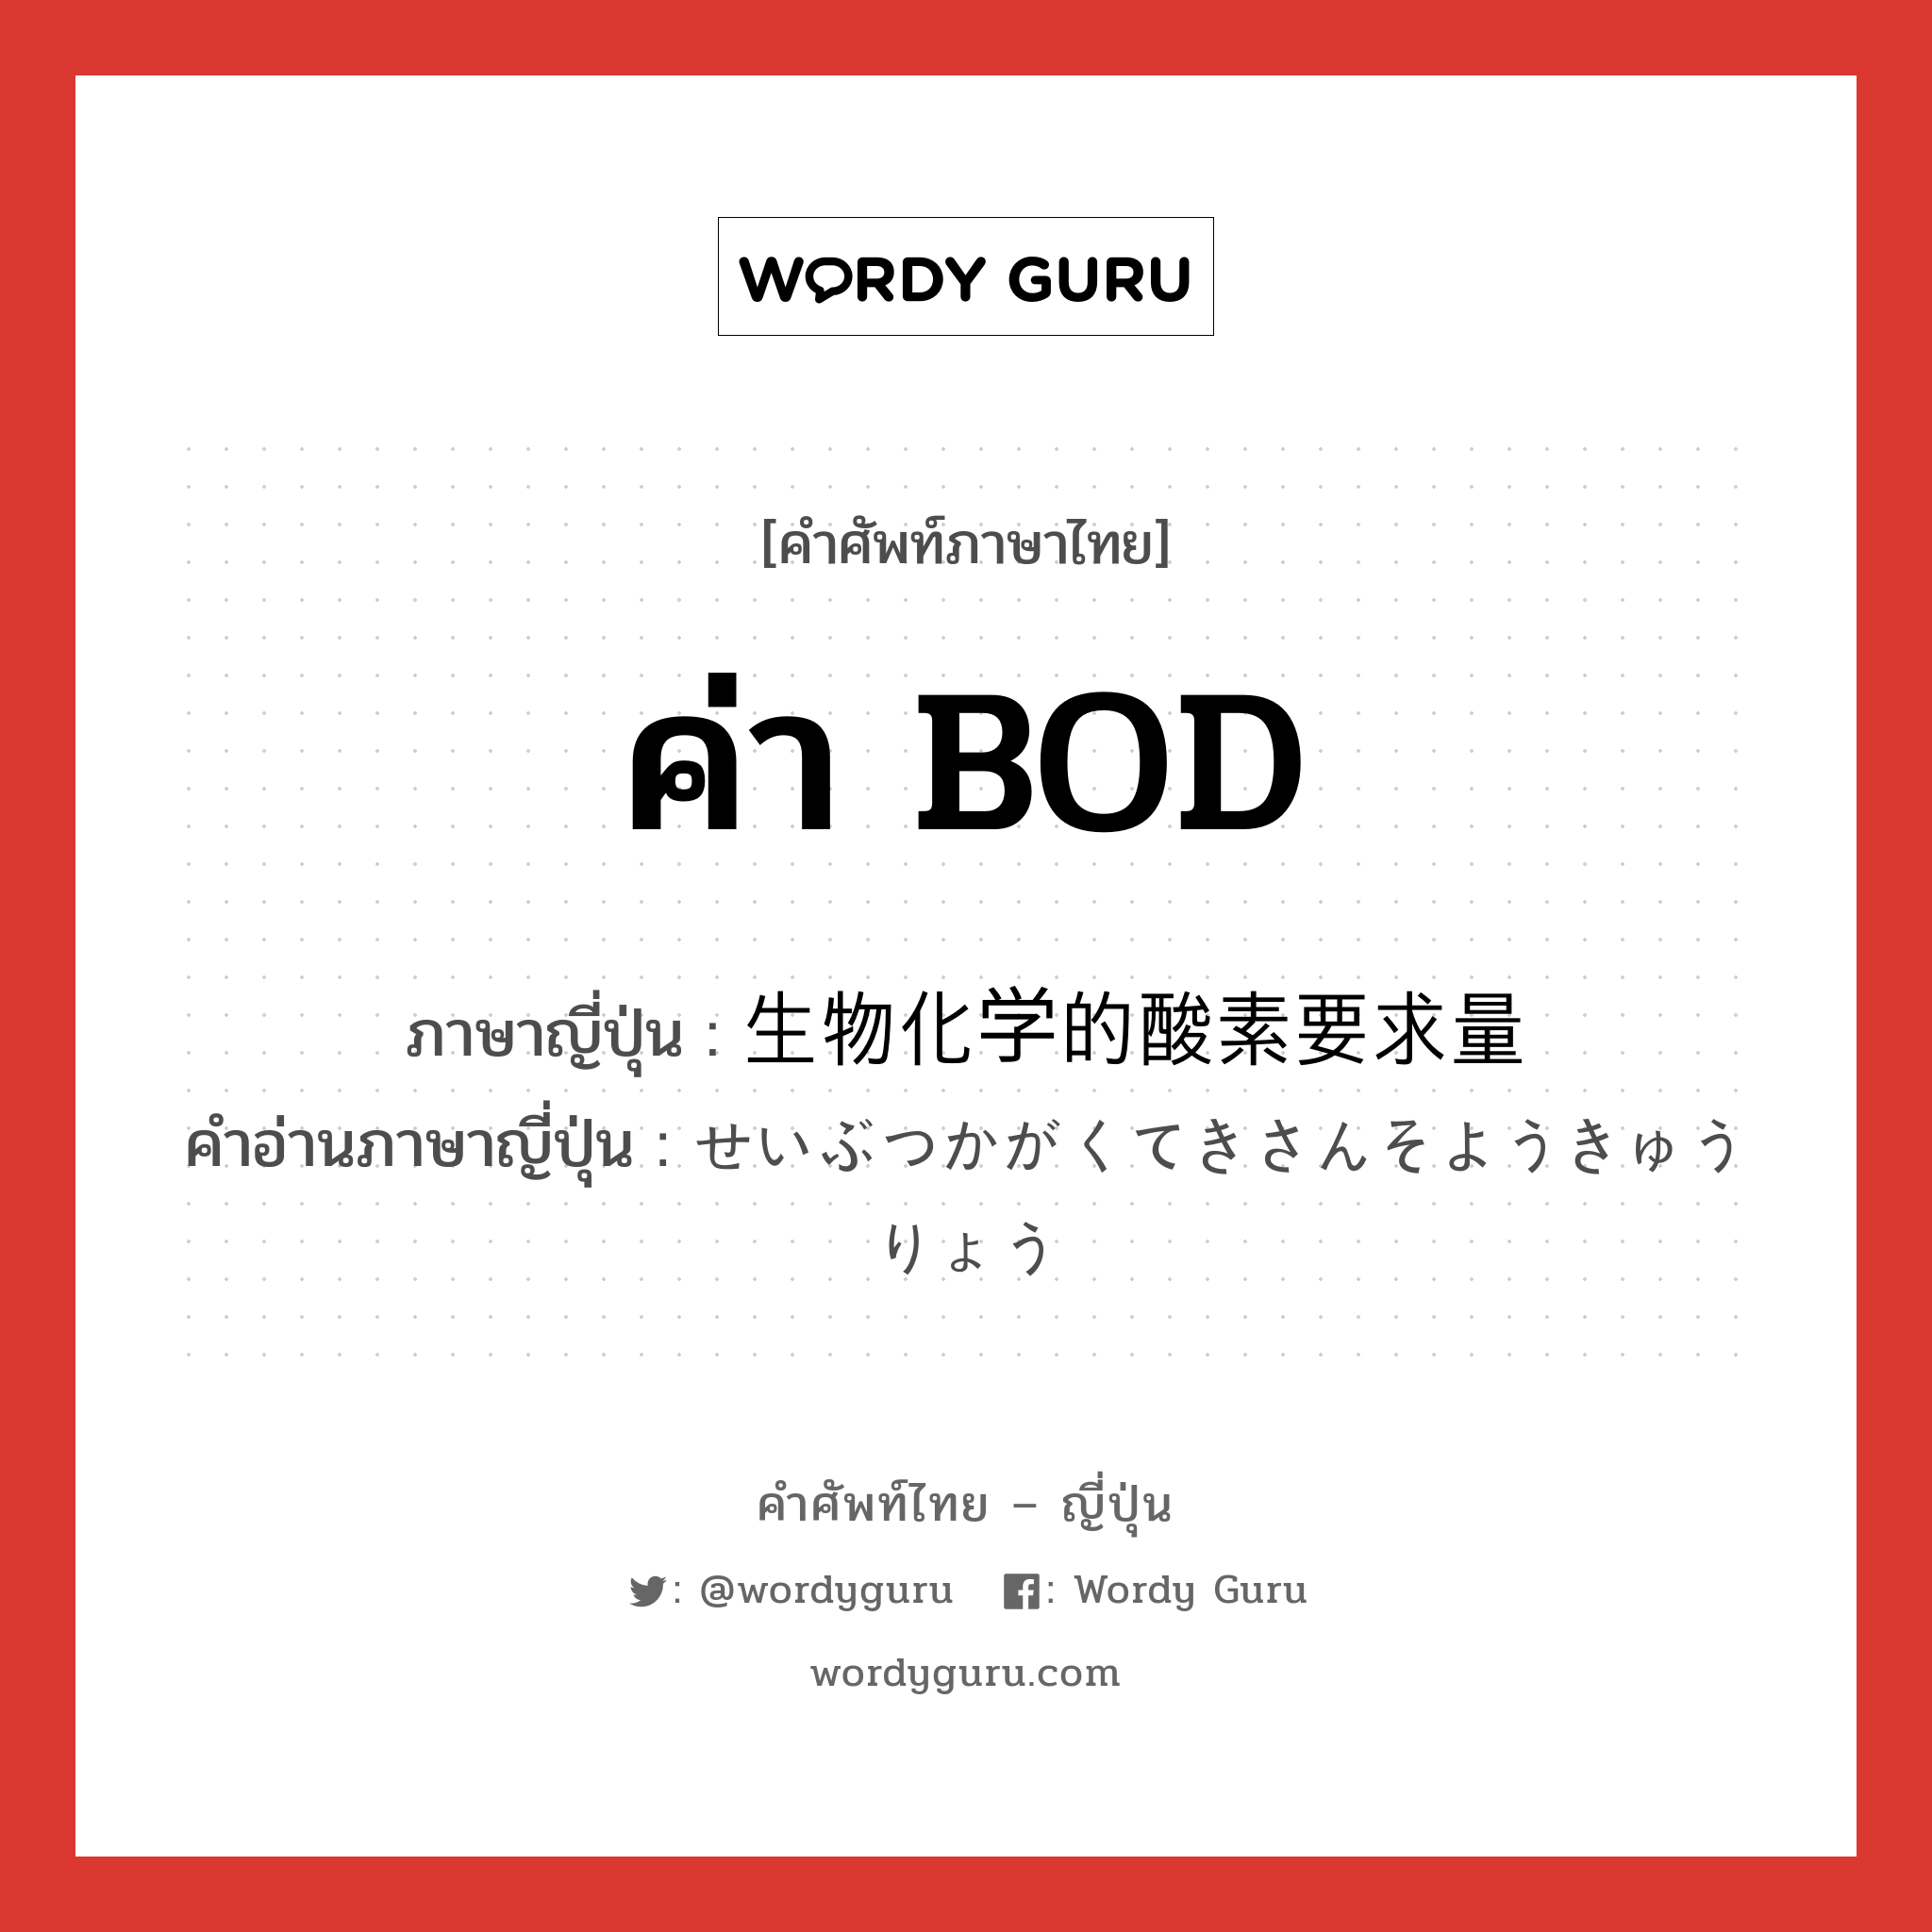 ค่า BOD ภาษาญี่ปุ่นคืออะไร, คำศัพท์ภาษาไทย - ญี่ปุ่น ค่า BOD ภาษาญี่ปุ่น 生物化学的酸素要求量 คำอ่านภาษาญี่ปุ่น せいぶつかがくてきさんそようきゅうりょう หมวด n หมวด n